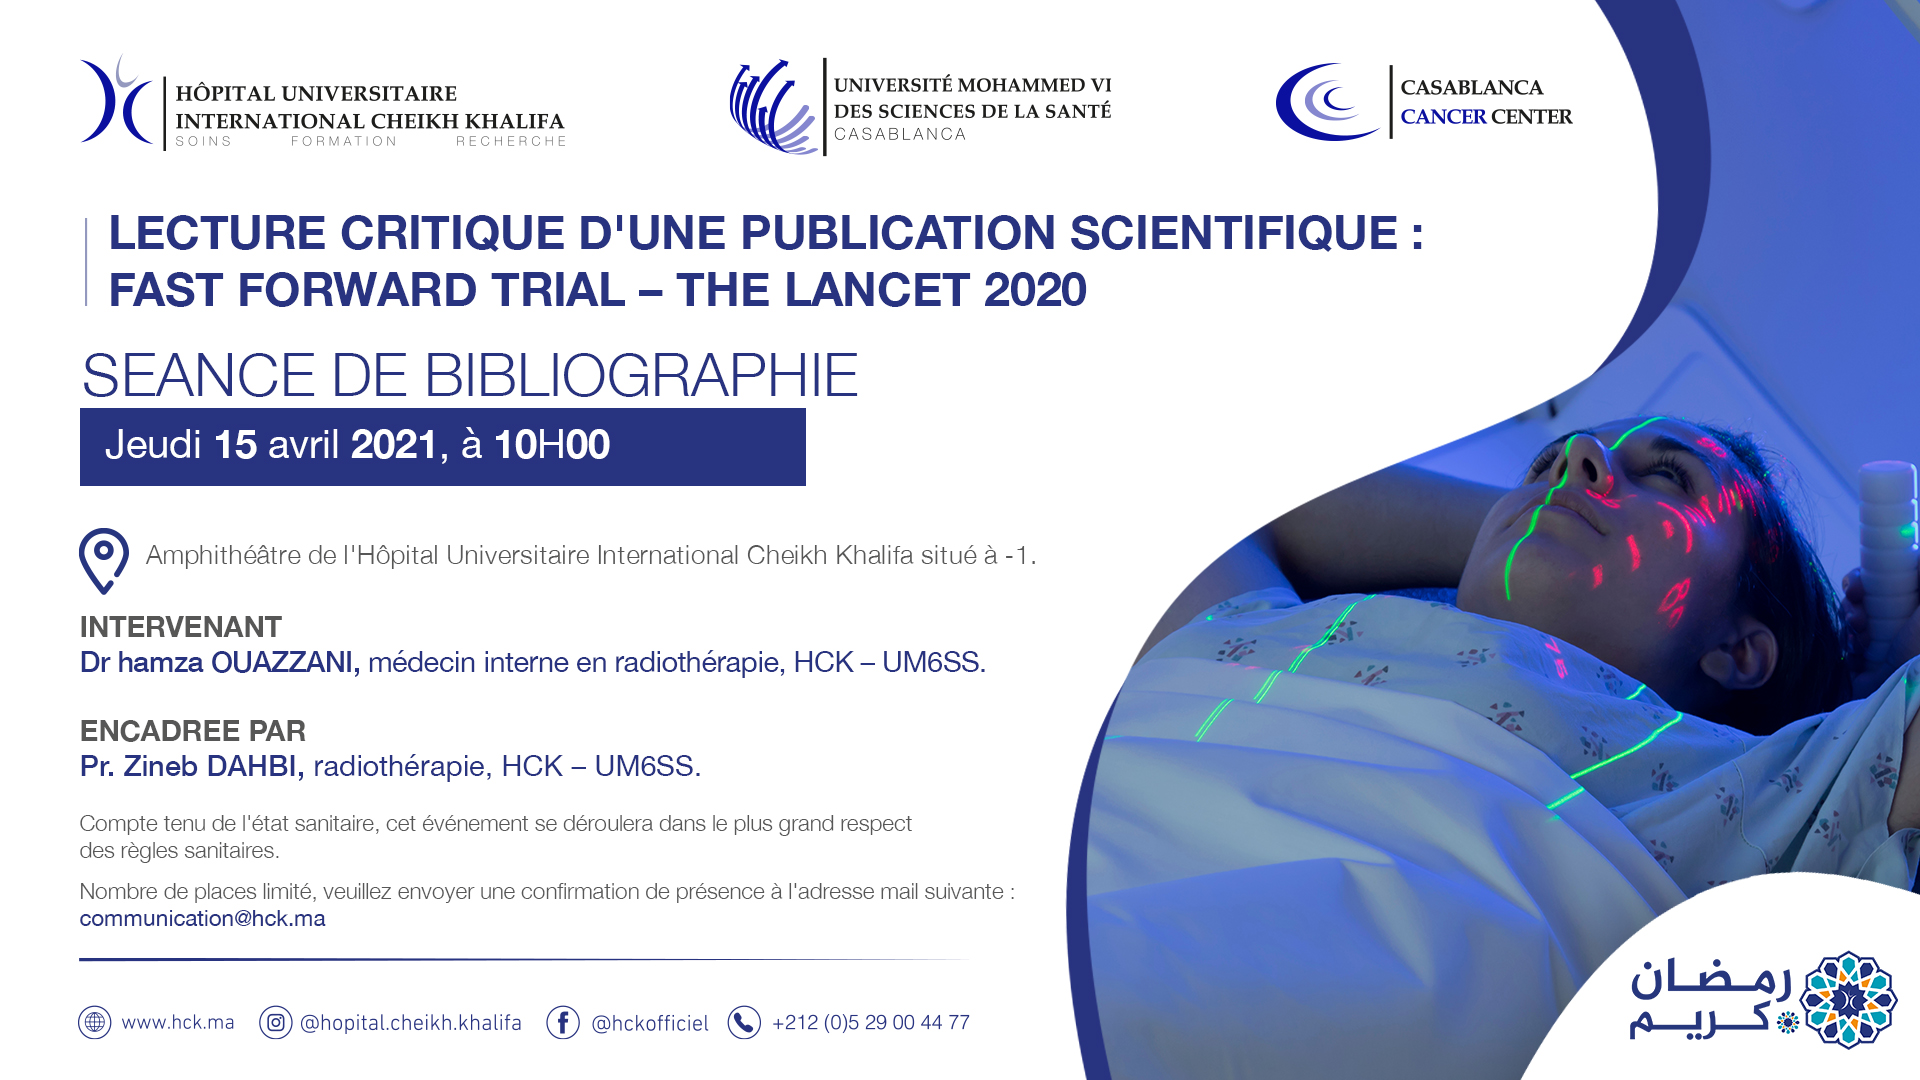 SEANCE DE BIBLIOGRAPHIE : LECTURE CRITIQUE D'UNE PUBLICATION SCIENTIFIQUE : FAST FORWARD TRIAL – THE LANCET 2020